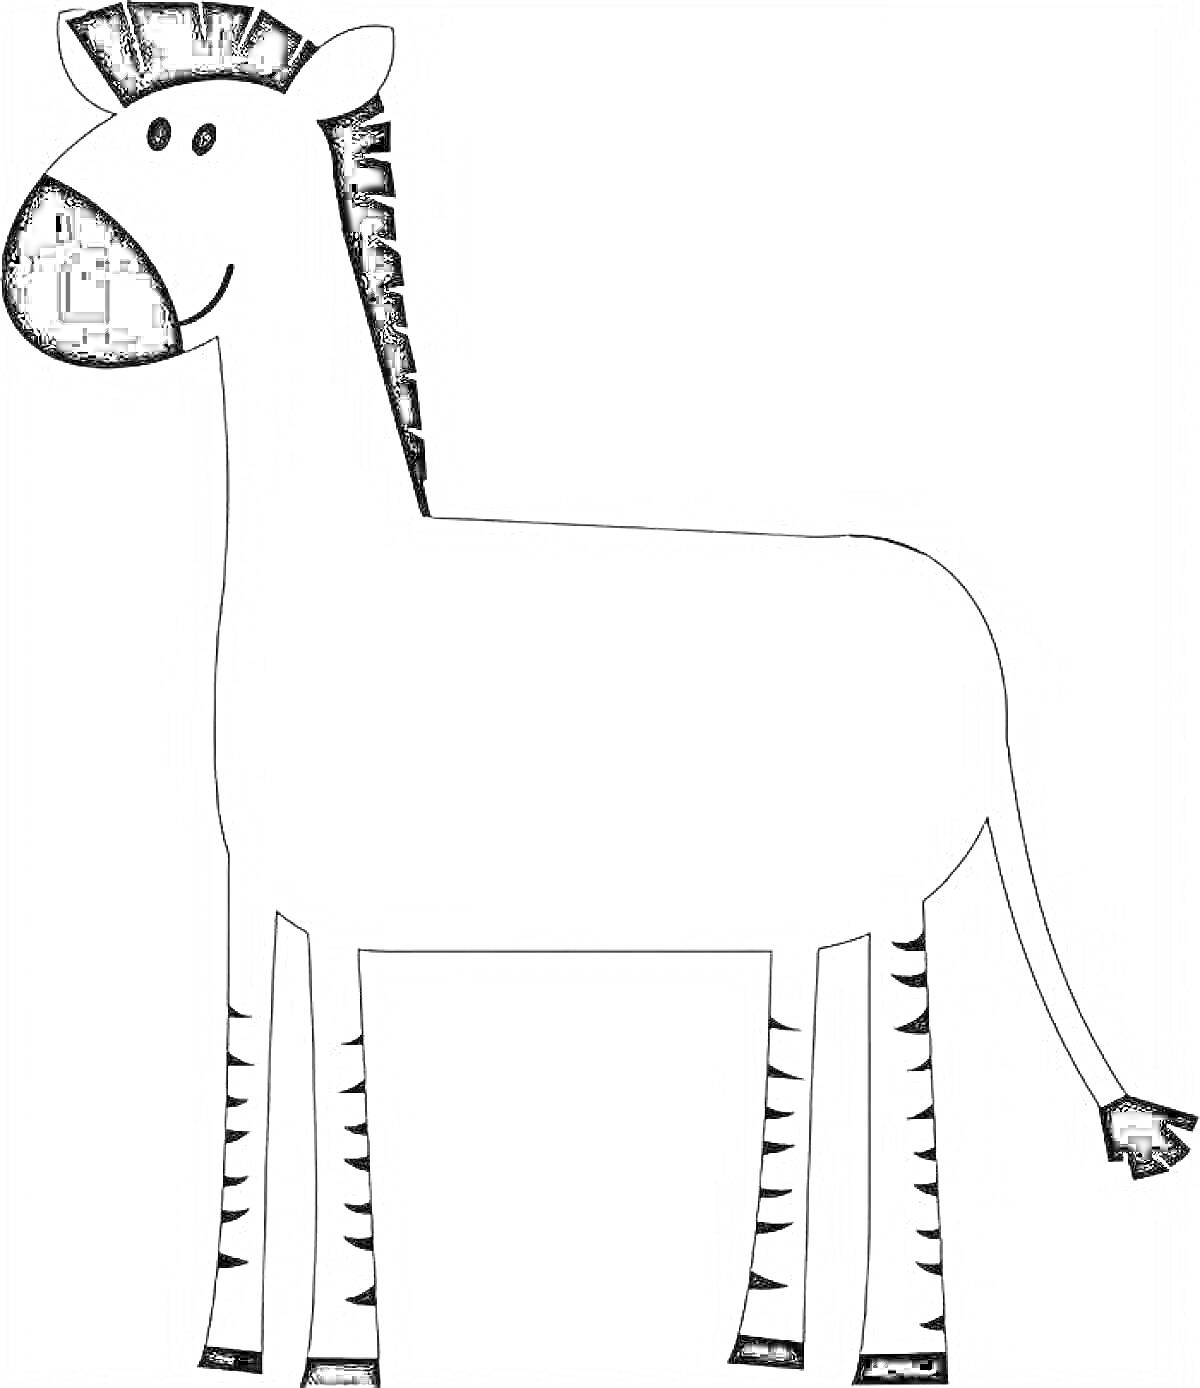 Раскраска зебра без полосок, с черной гривой и хвостом, на белом фоне, счастливое выражение лица